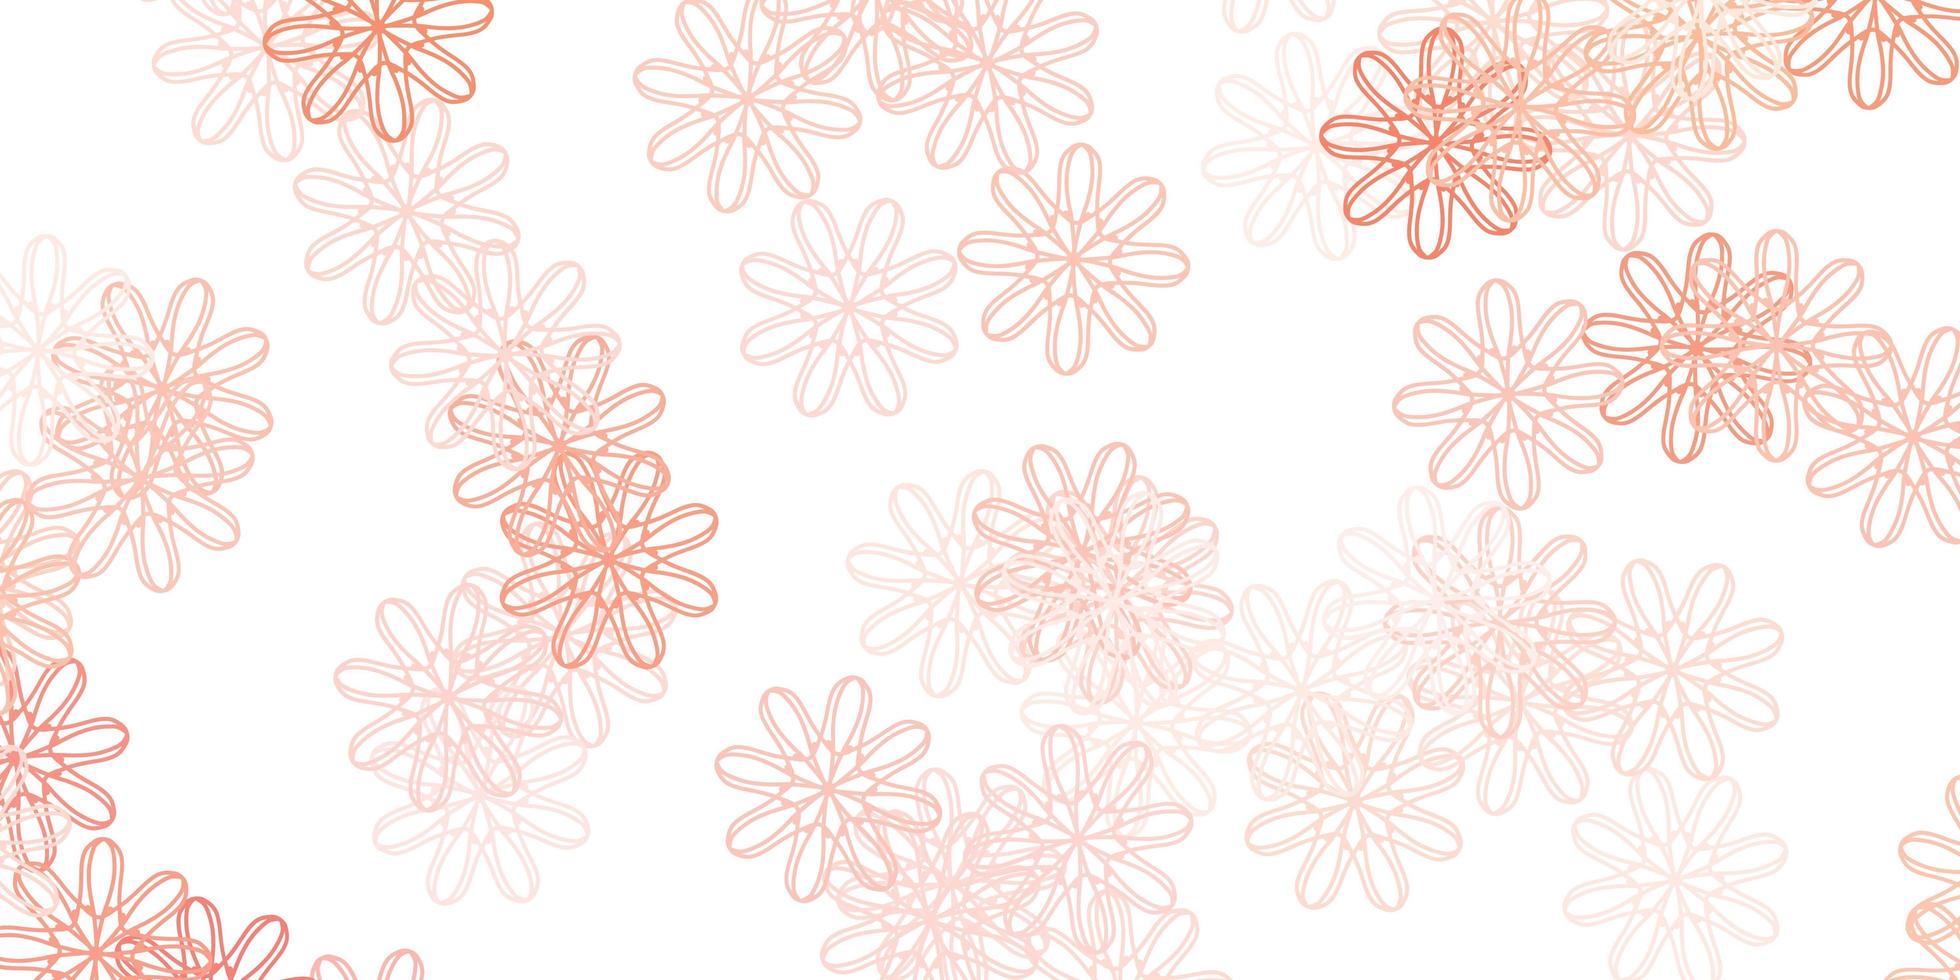 ljusröd vektor doodle mall med blommor.